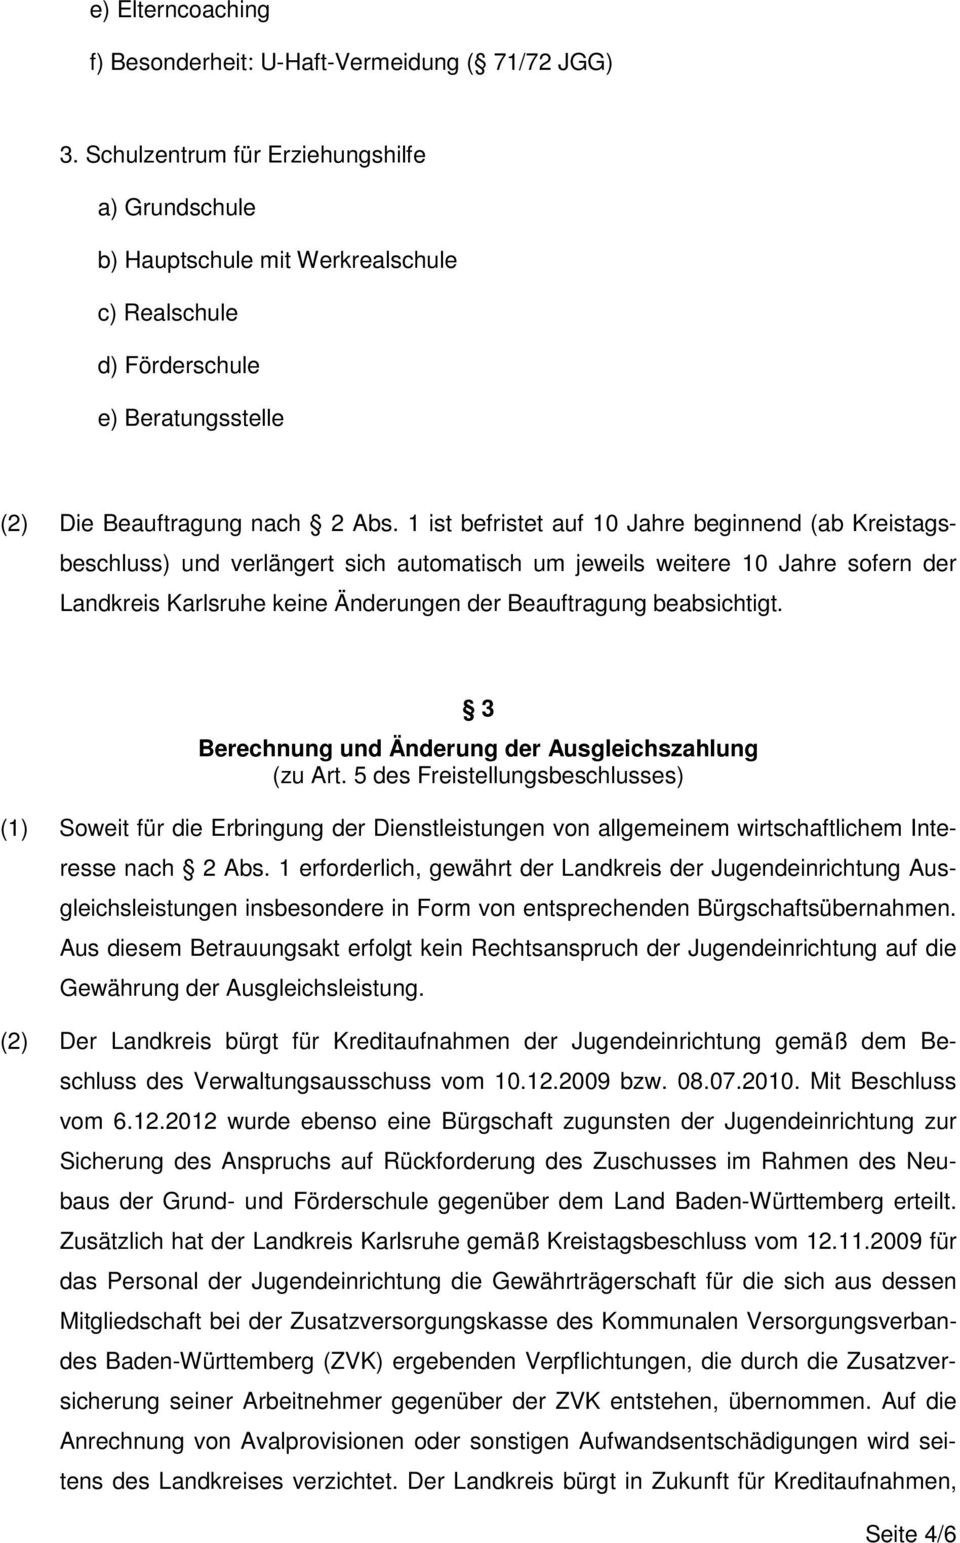 1 ist befristet auf 10 Jahre beginnend (ab Kreistagsbeschluss) und verlängert sich automatisch um jeweils weitere 10 Jahre sofern der Landkreis Karlsruhe keine Änderungen der Beauftragung